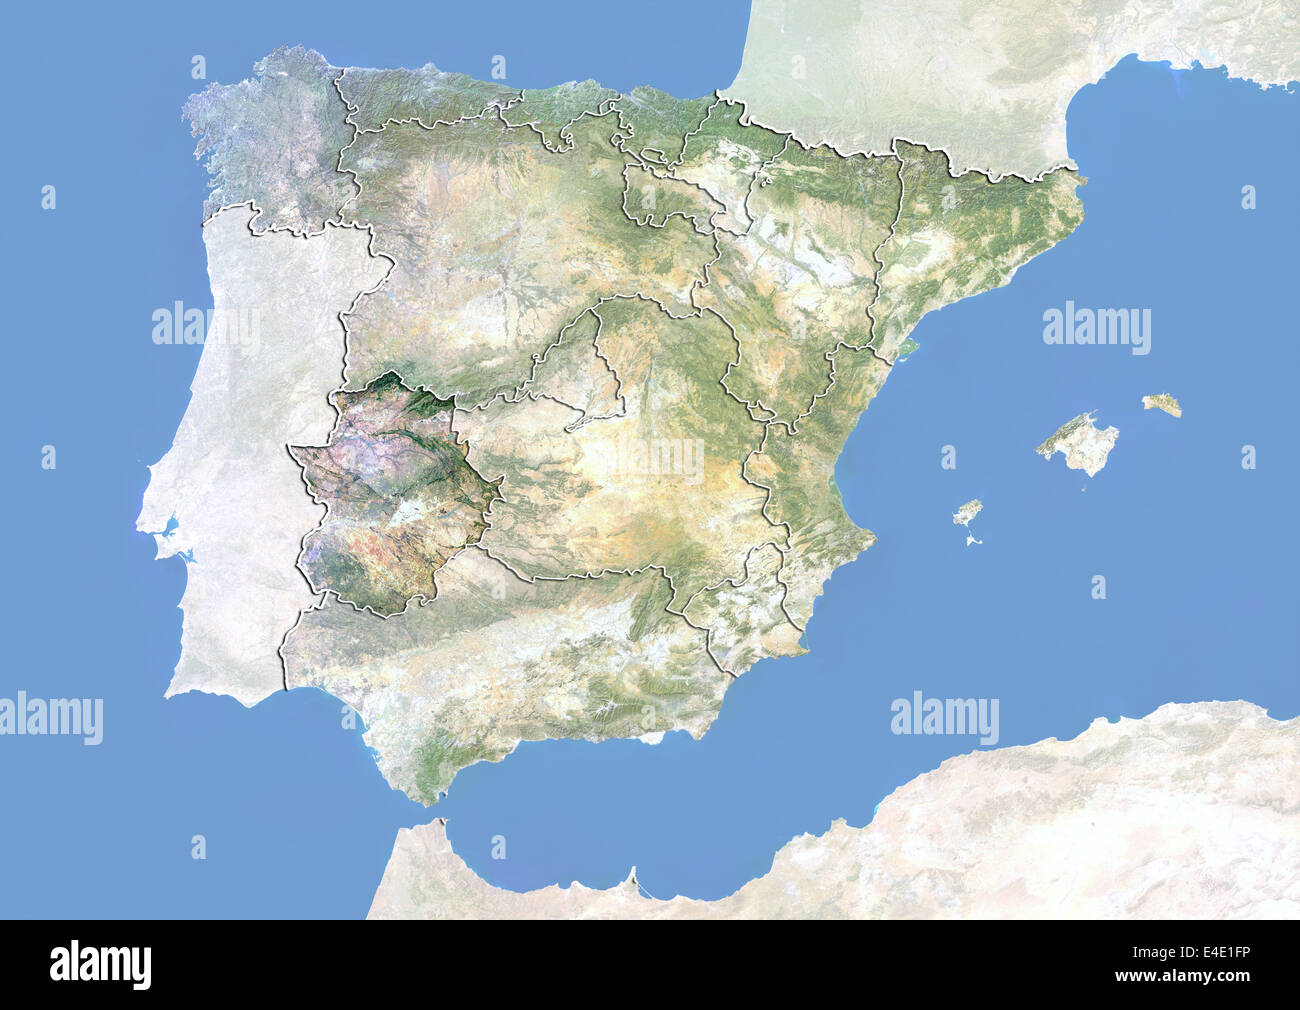 L'Espagne et la région de l'Estrémadure, image satellite avec effet de choc Banque D'Images